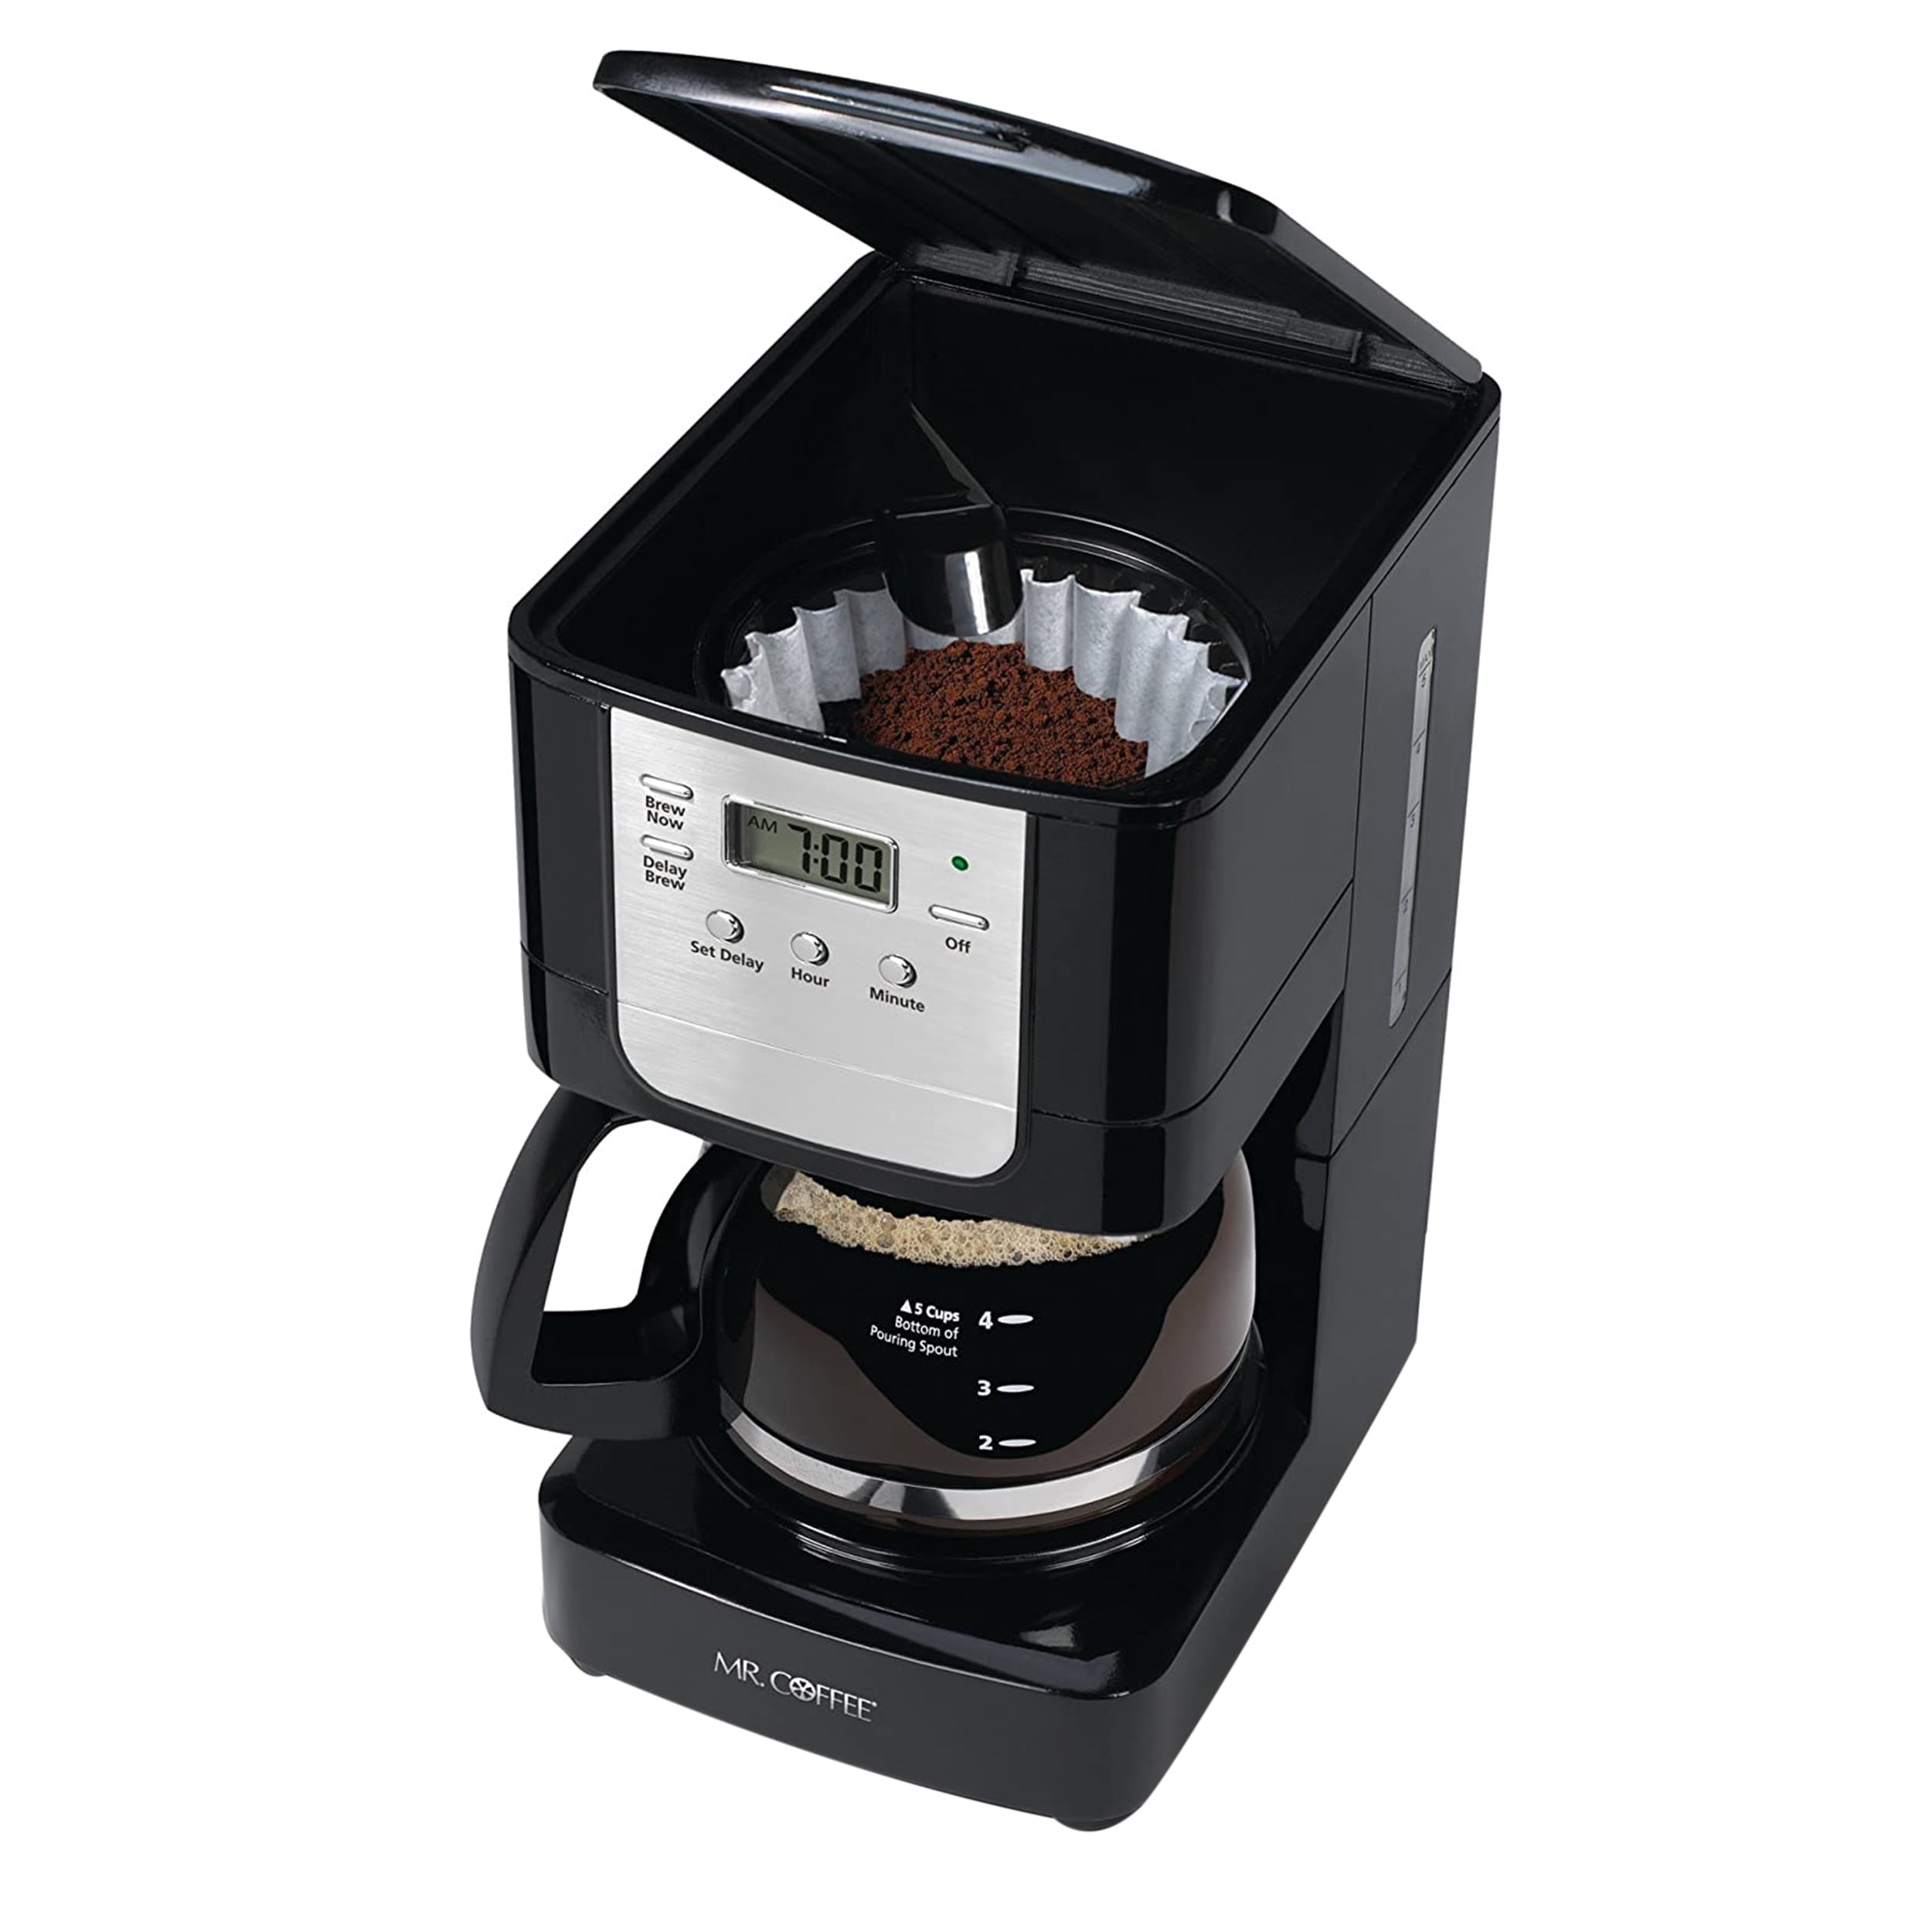 Mr. Coffee 5-Cup Coffeemaker Black 2132049 - Best Buy